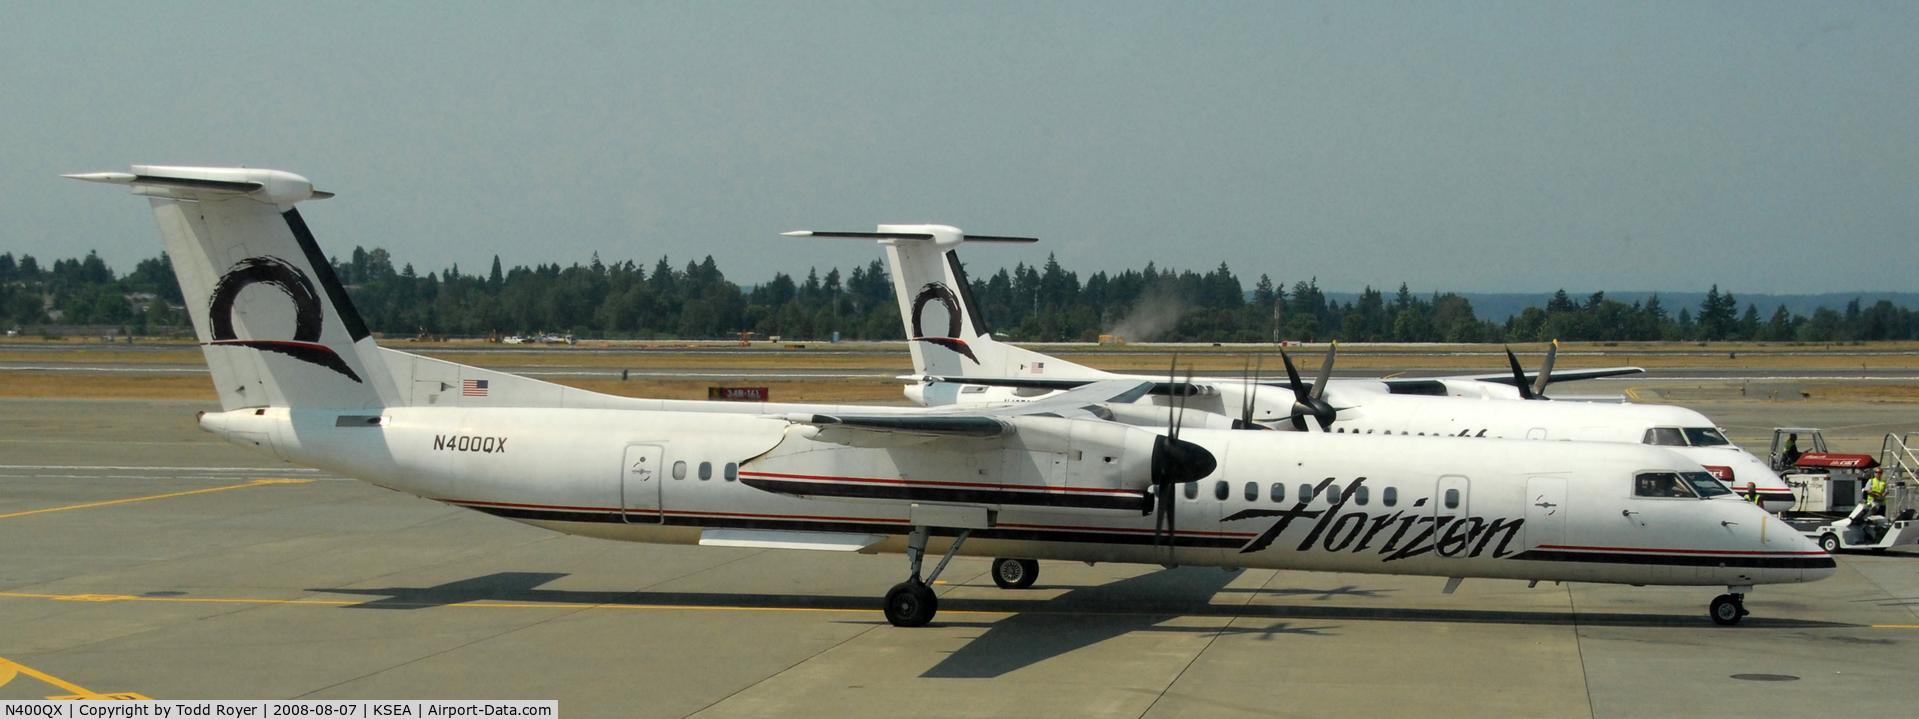 N400QX, 2000 Bombardier DHC-8-402 Dash 8 C/N 4030, Preparing for departure